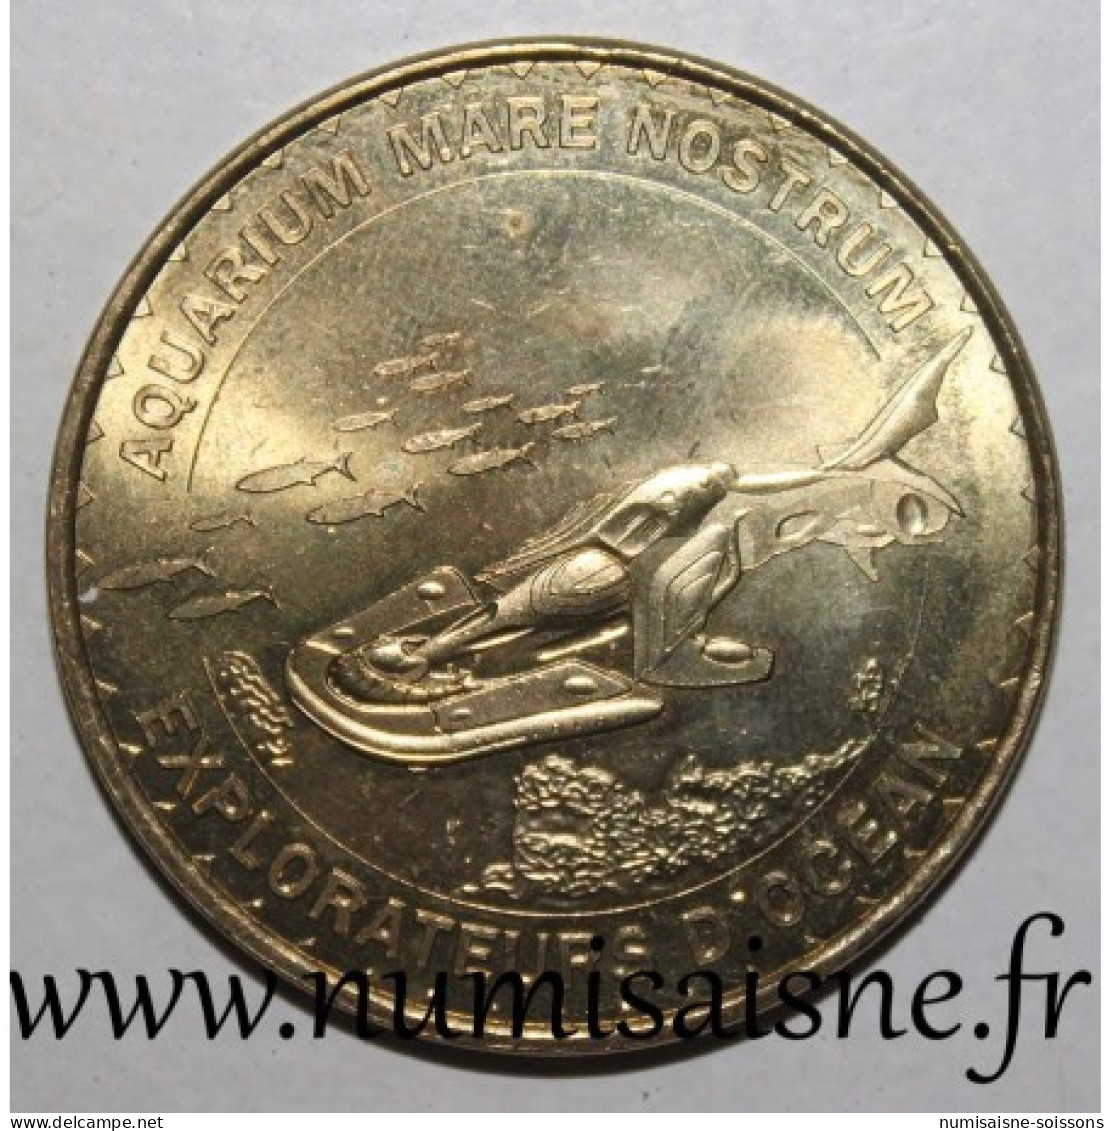 34 - MONTPELLIER - MARE NOSTRUM - Explorateur D'océan - Monnaie De Paris - 2014 - 2014